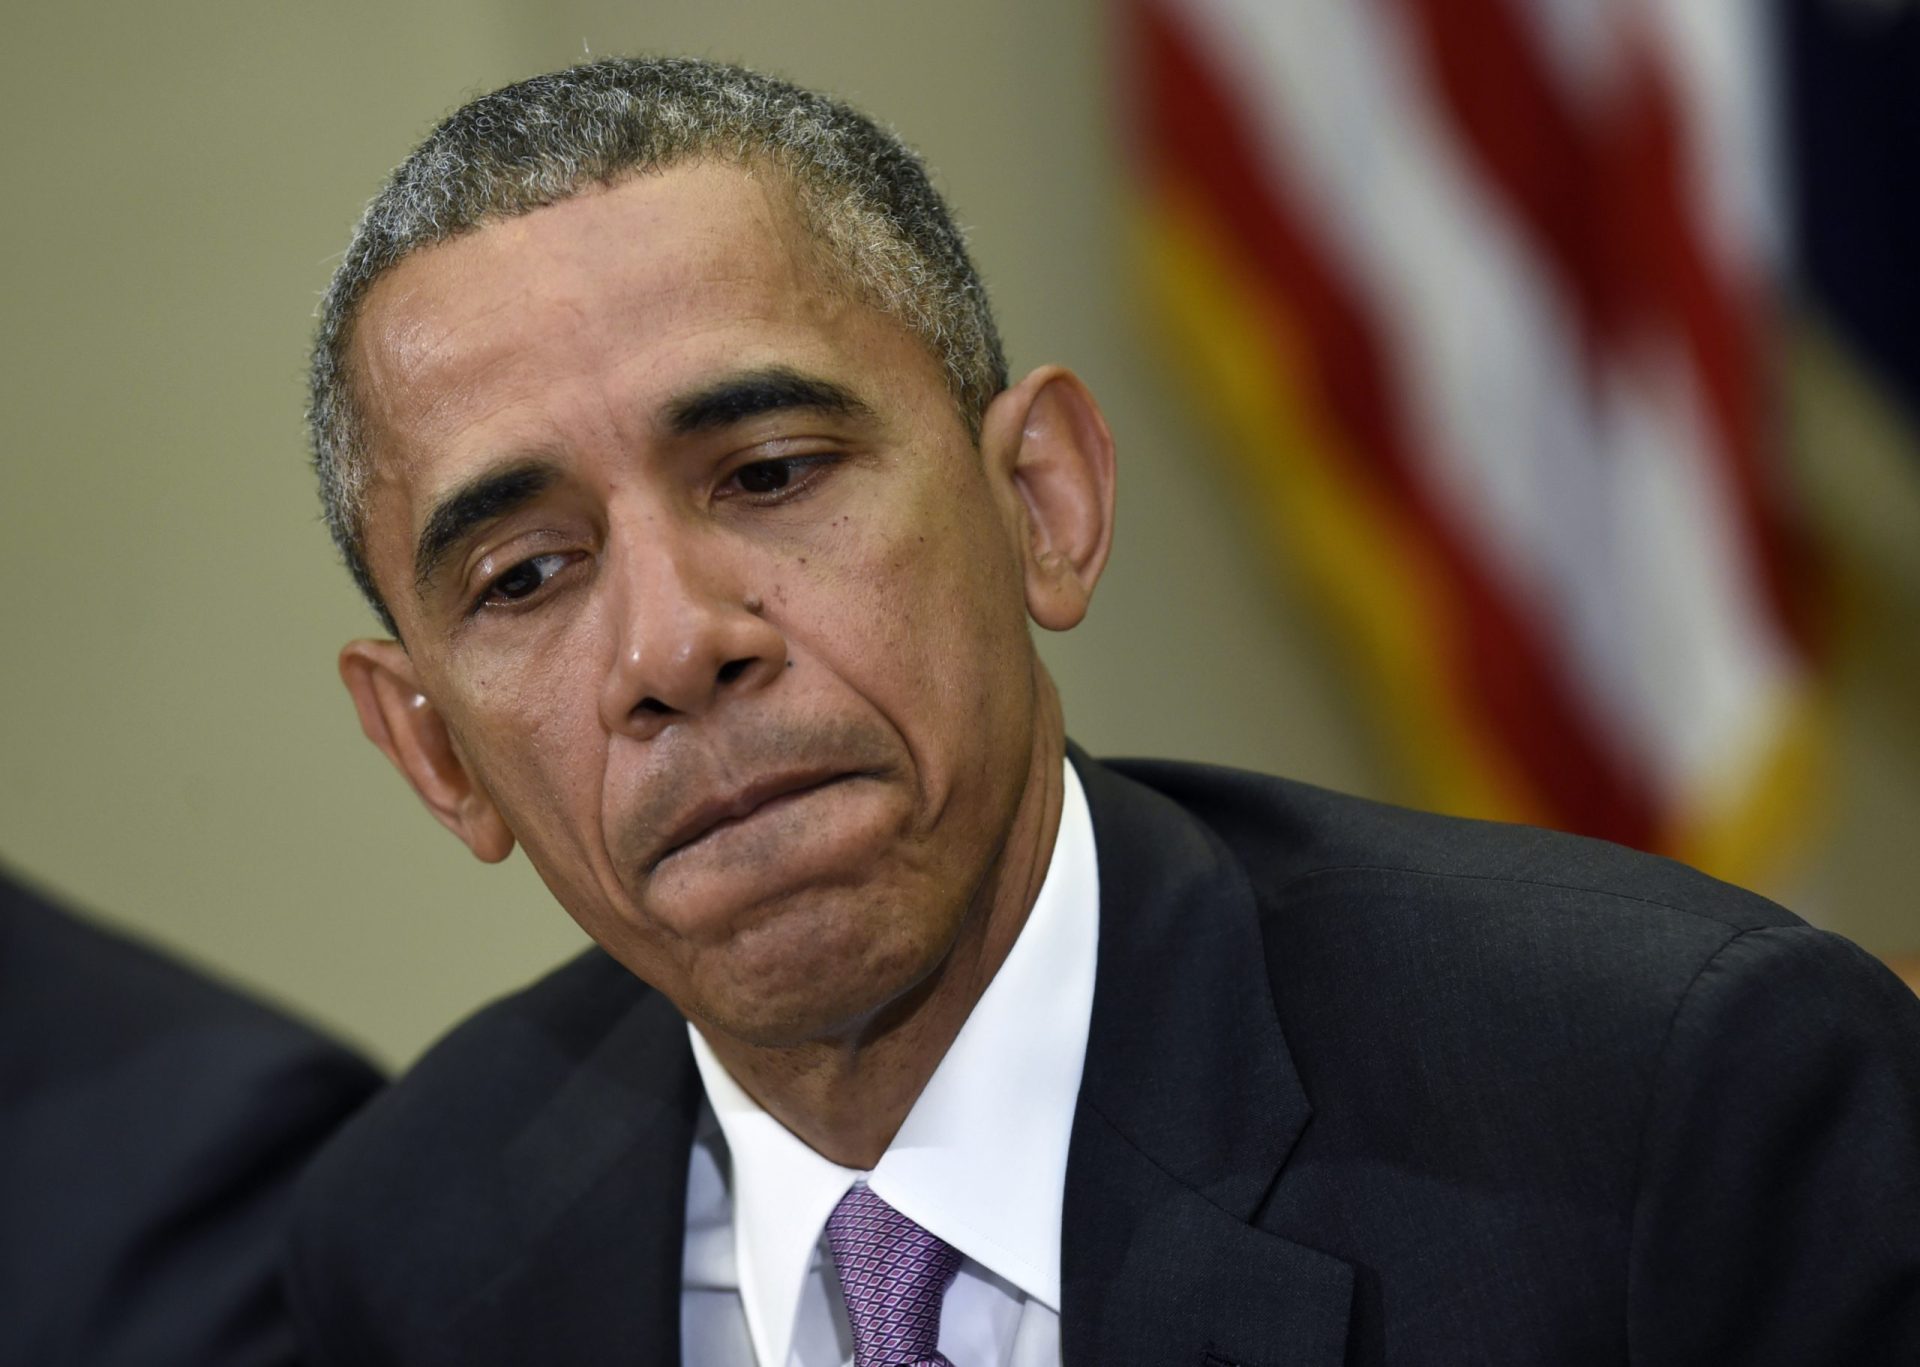 Obama mentiu sobre a morte de Bin Laden? A Casa Branca diz que não.